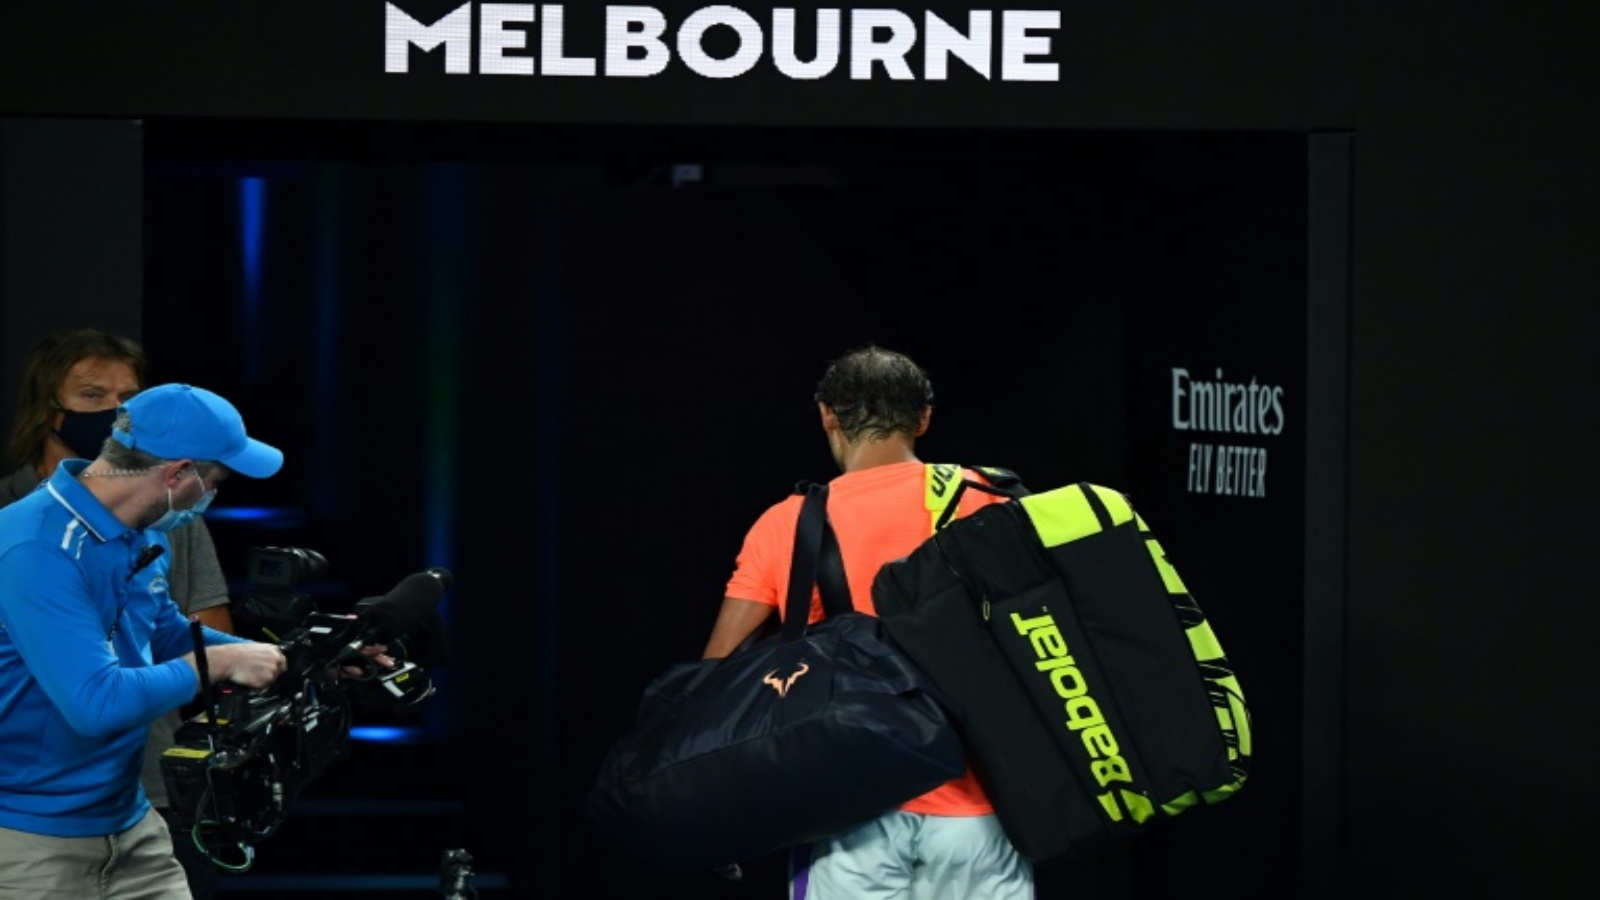 الاسباني رافايل نادال يغادر الملعب بعد خروجه من ربع نهائي بطولة استراليا لكرة المضرب، ملبورن في 17 شباط/فبراير 2021